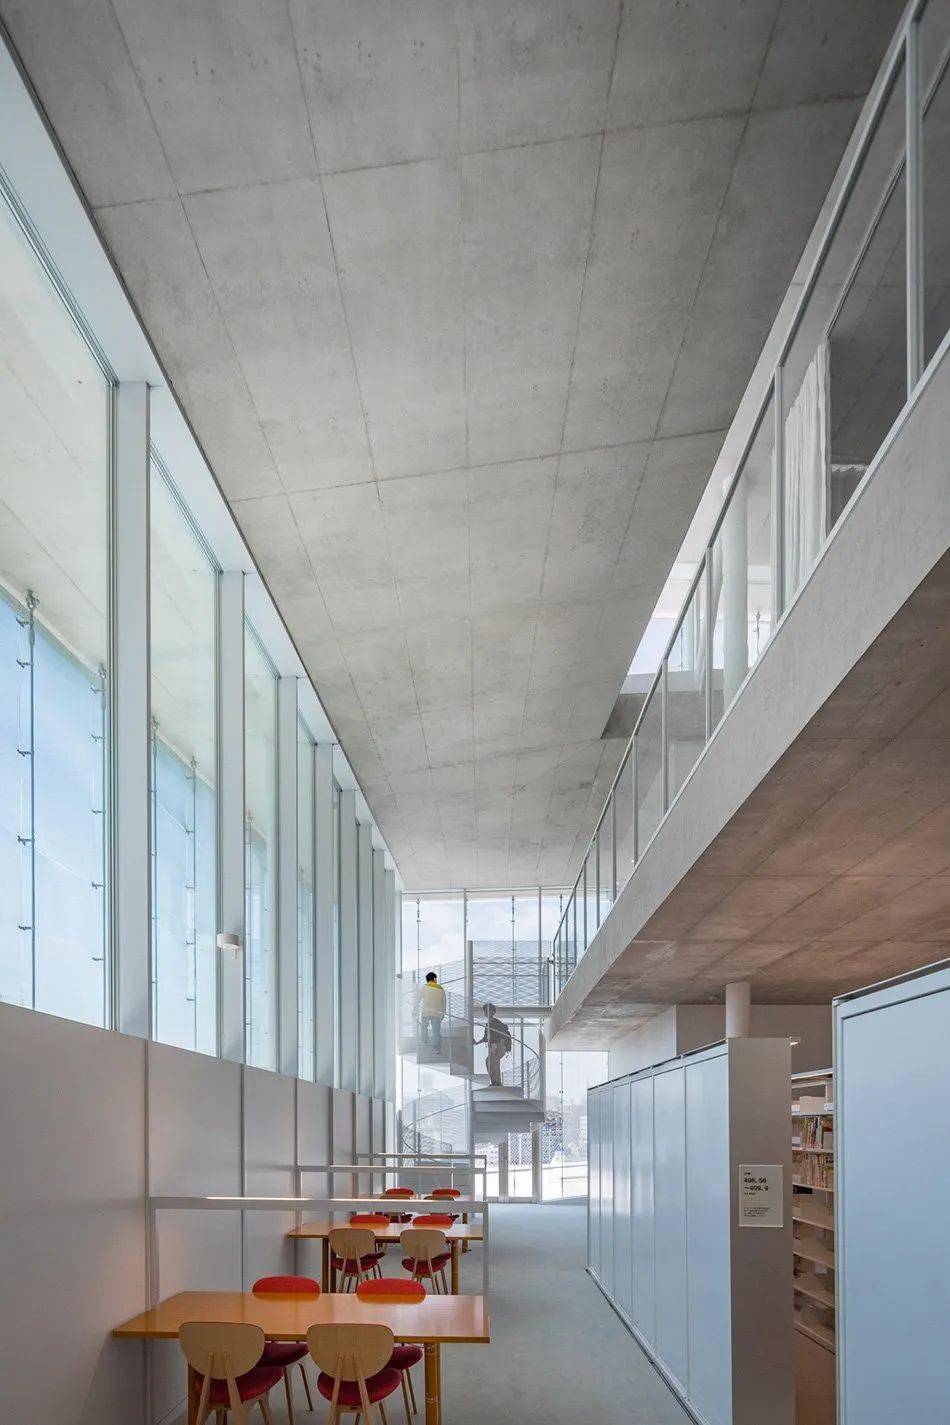 妹岛和世为母校设计的图书馆用混凝土玻璃构成的明净空间